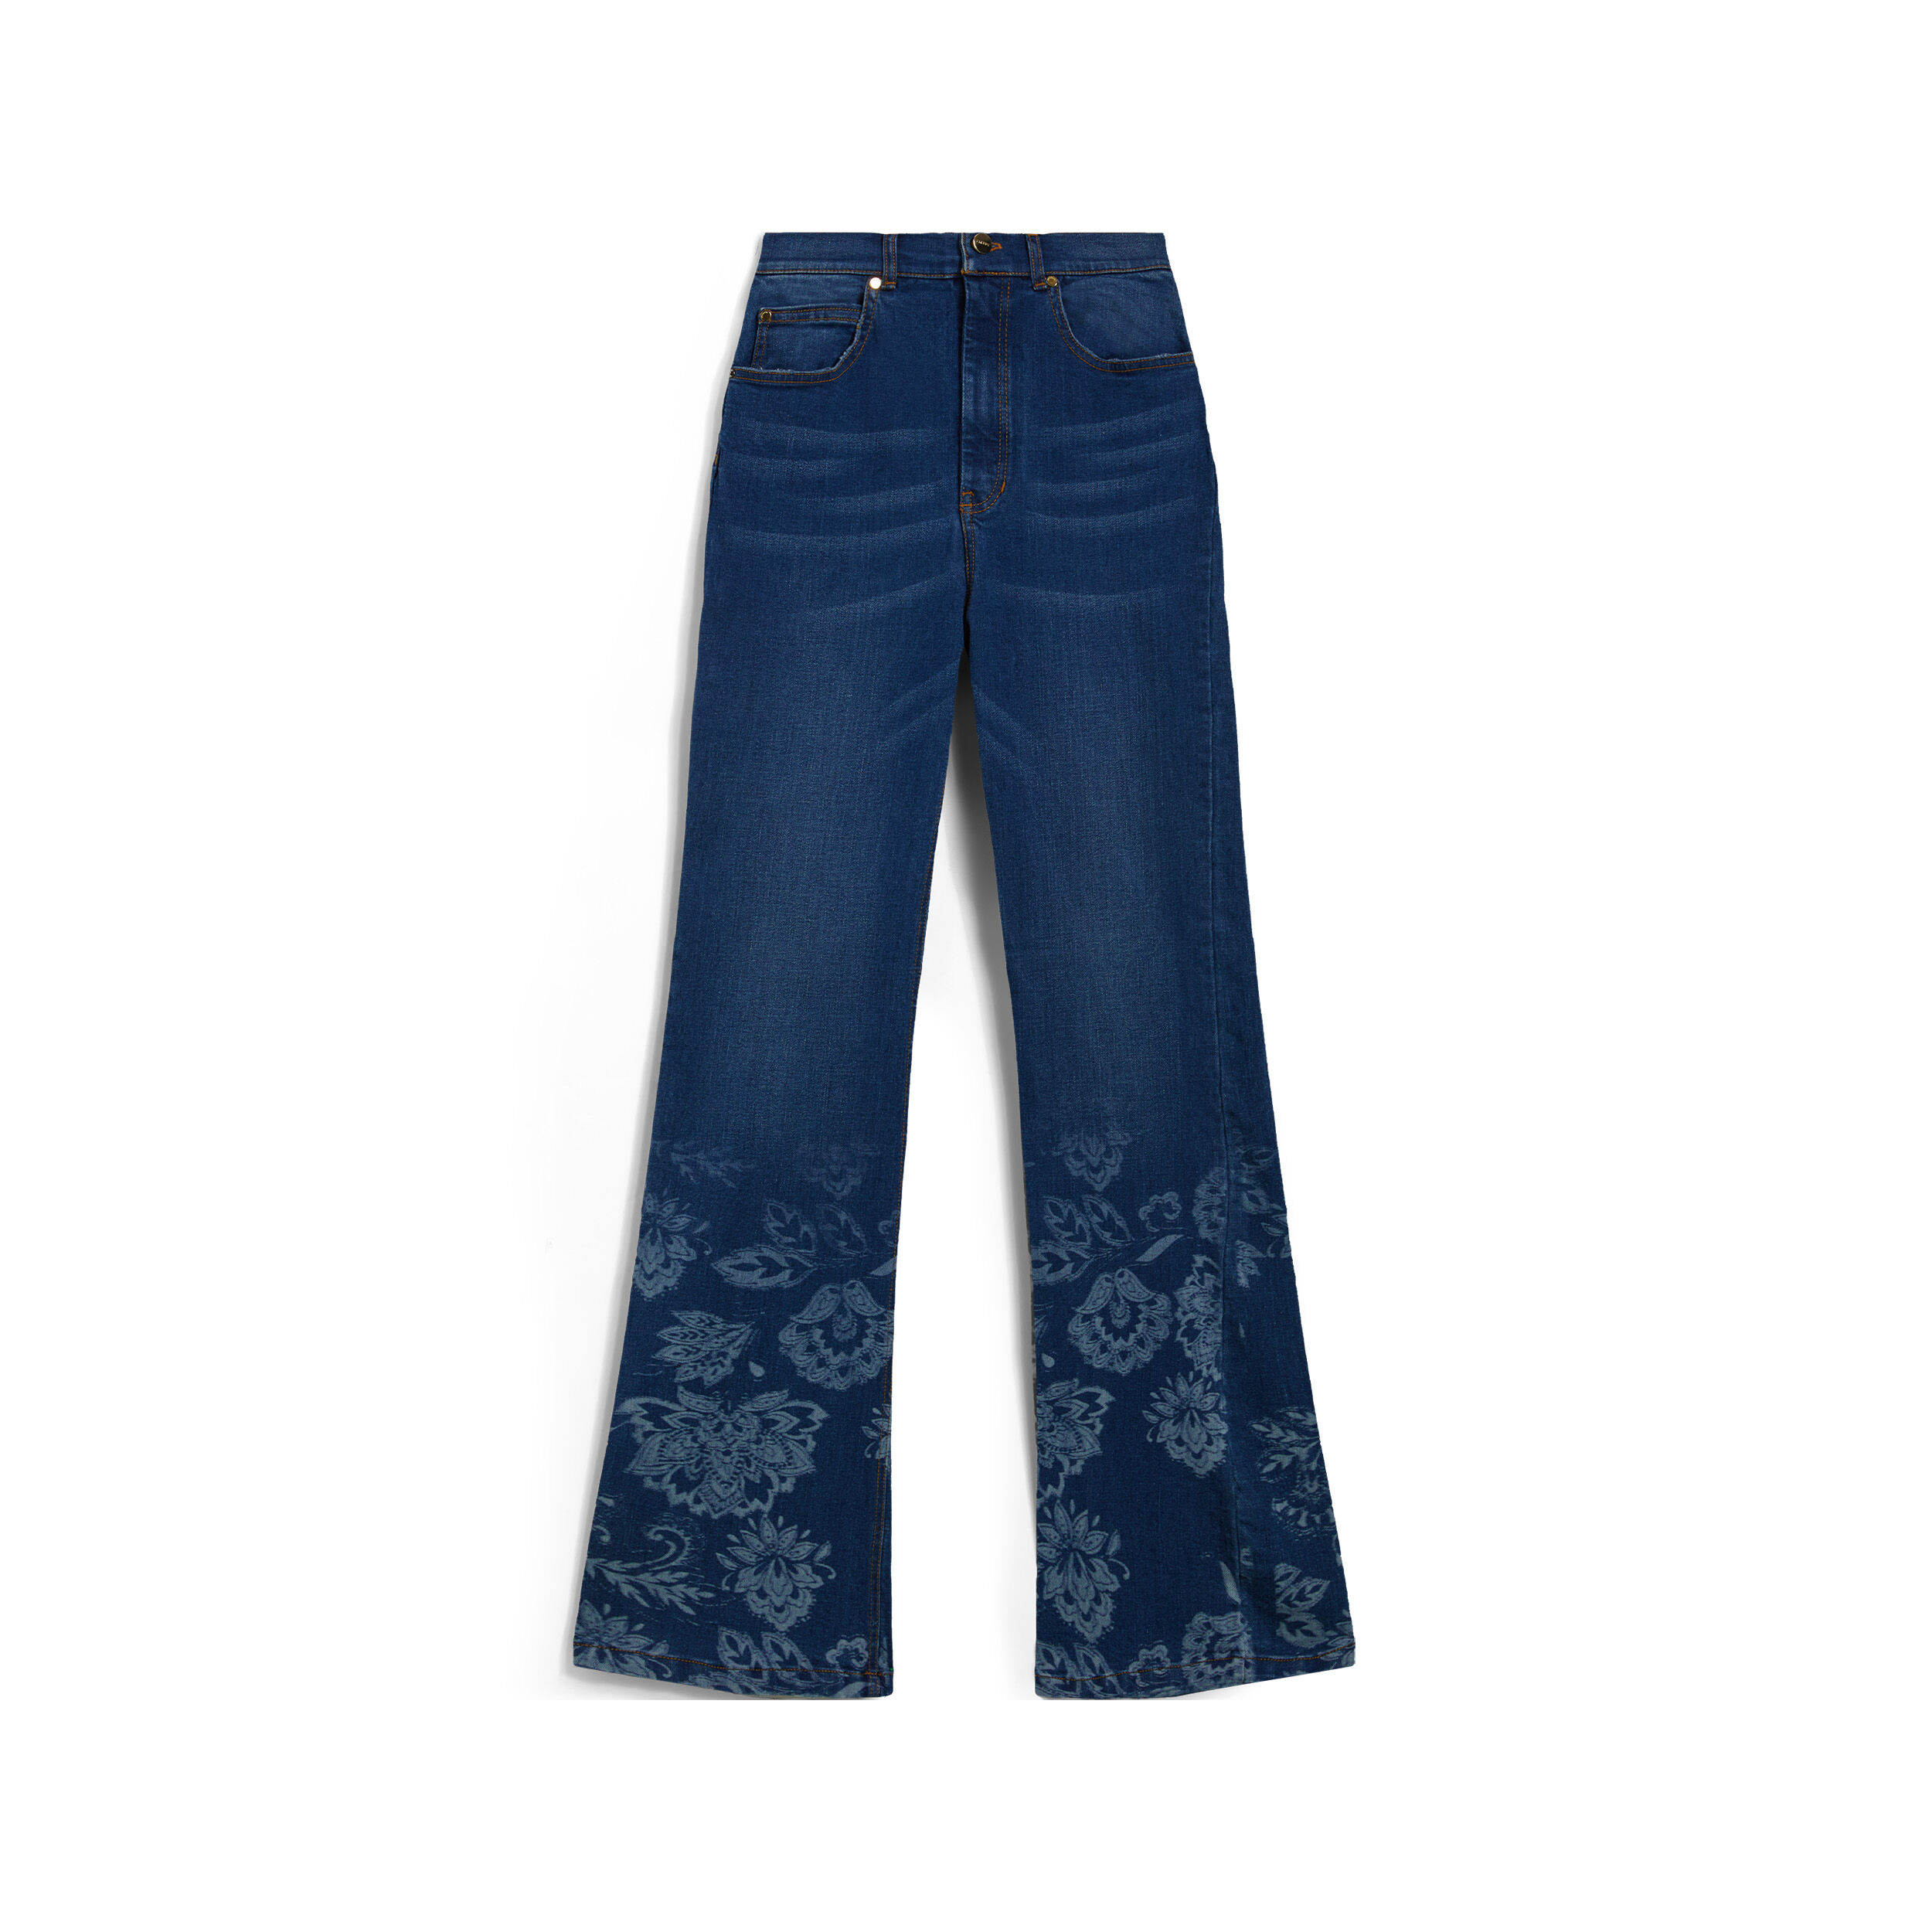 Freddy Jeans vita alta flondo a zampa decorato da grafica floreale Denim Blu Medio-Tob. Seams Donna Small